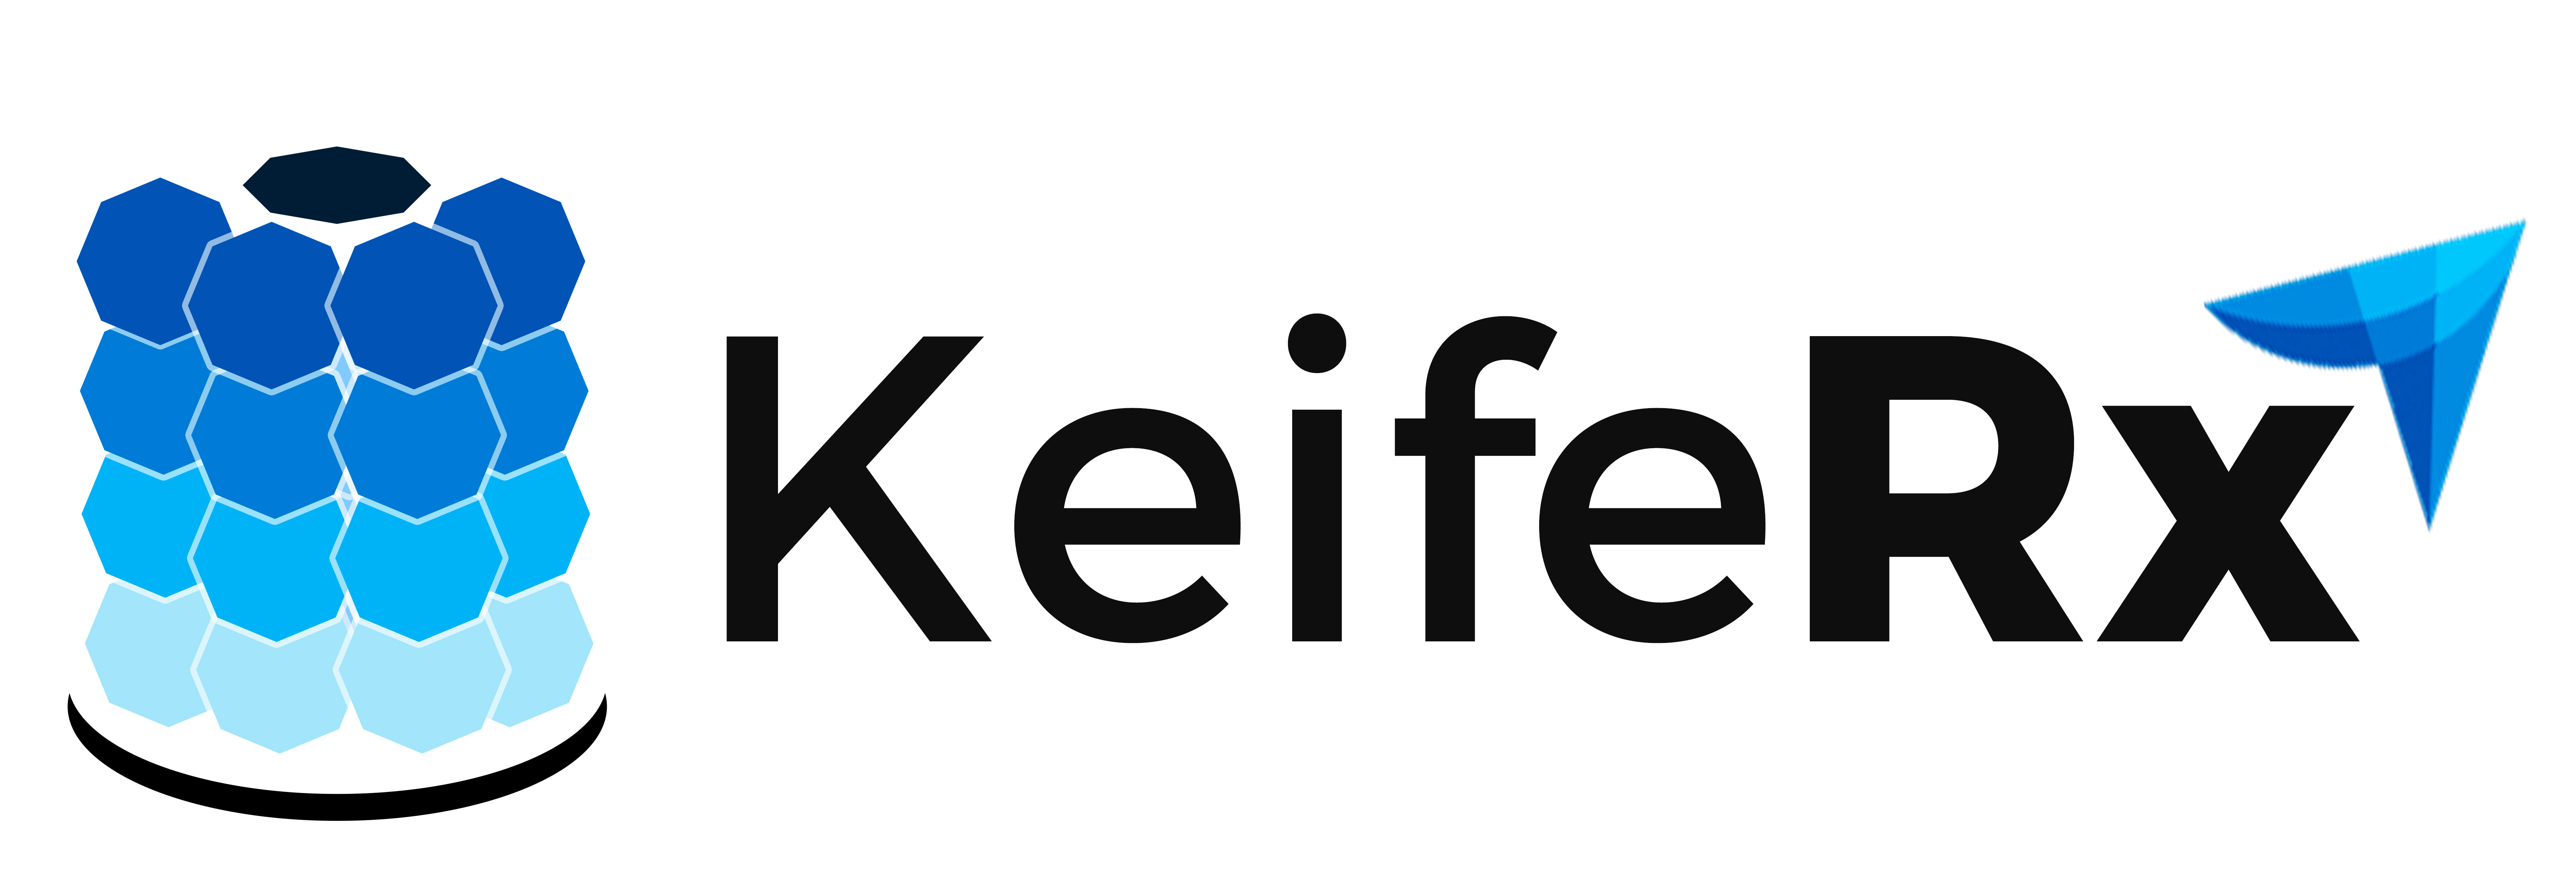 B KeifeRx (Gold)